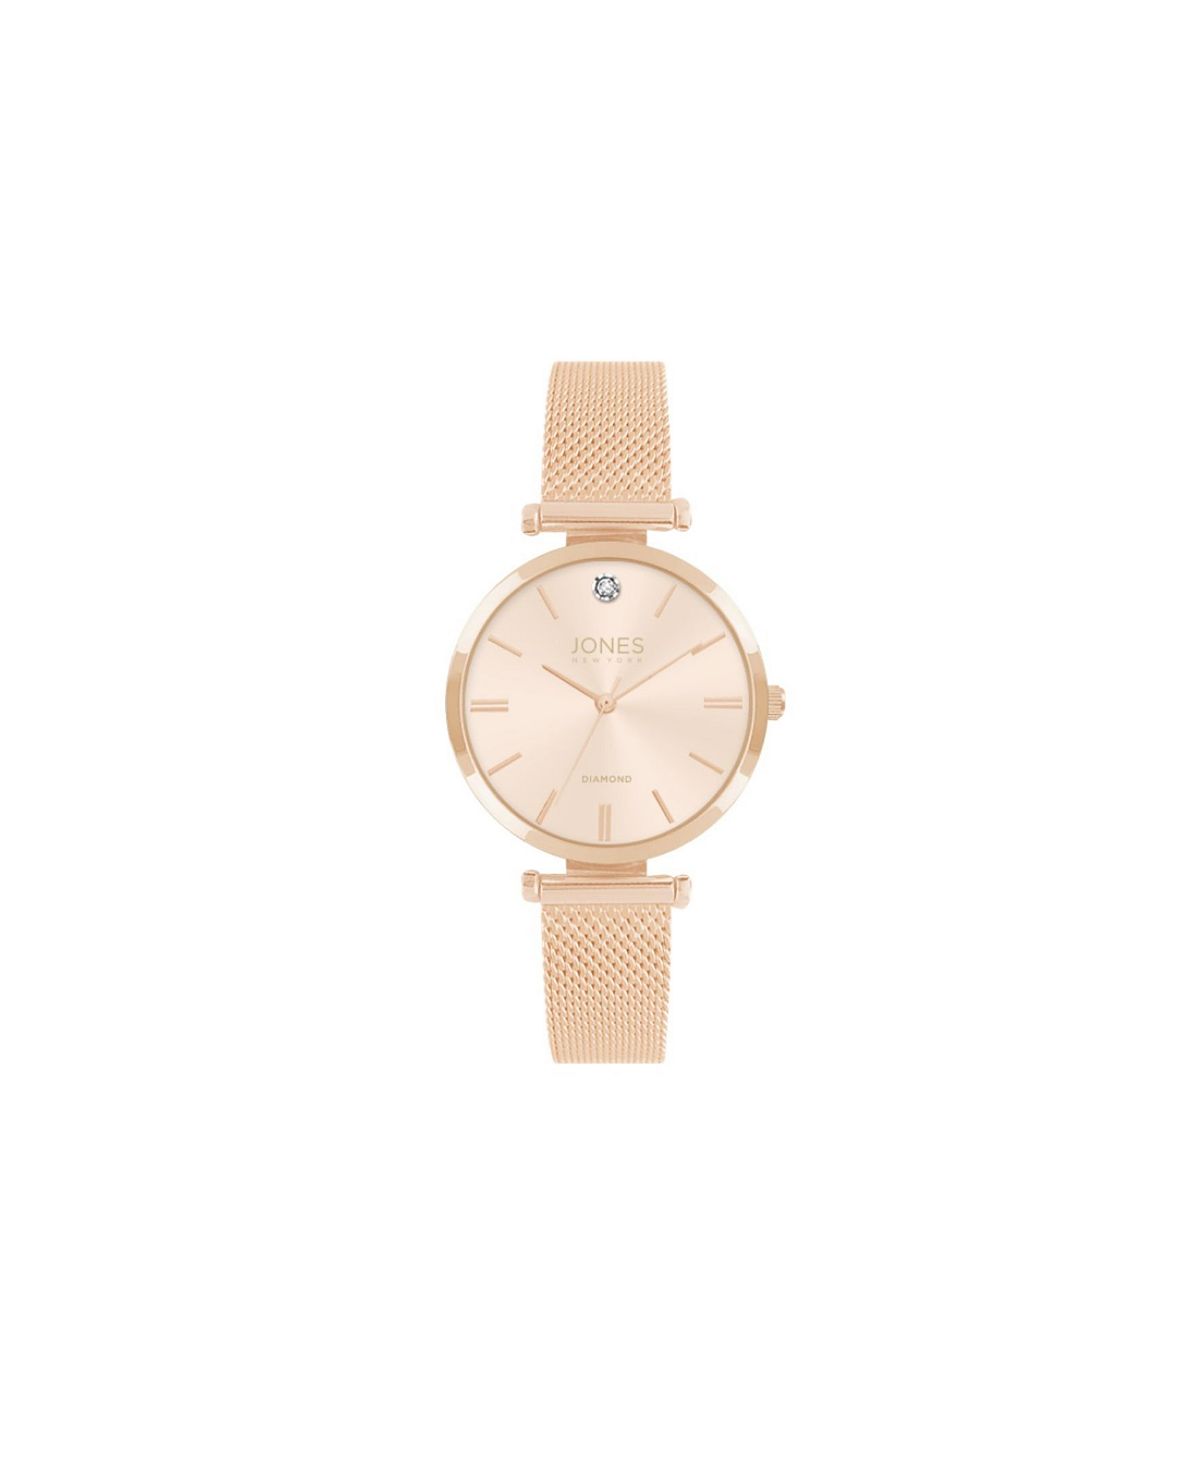 Женские часы с металлическим браслетом и сеткой цвета розового золота, 36 мм Jones New York